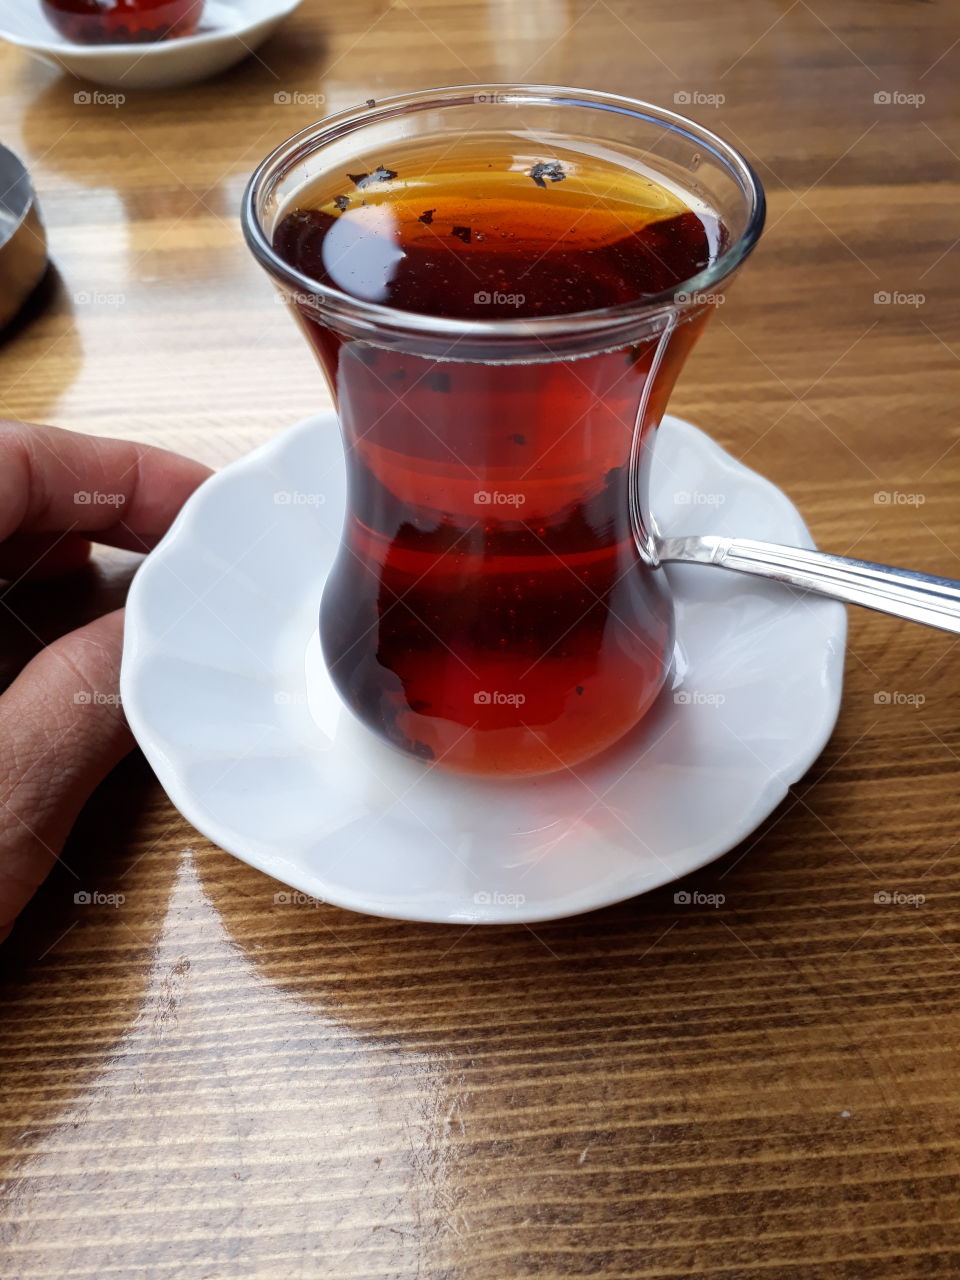 Turkey tea